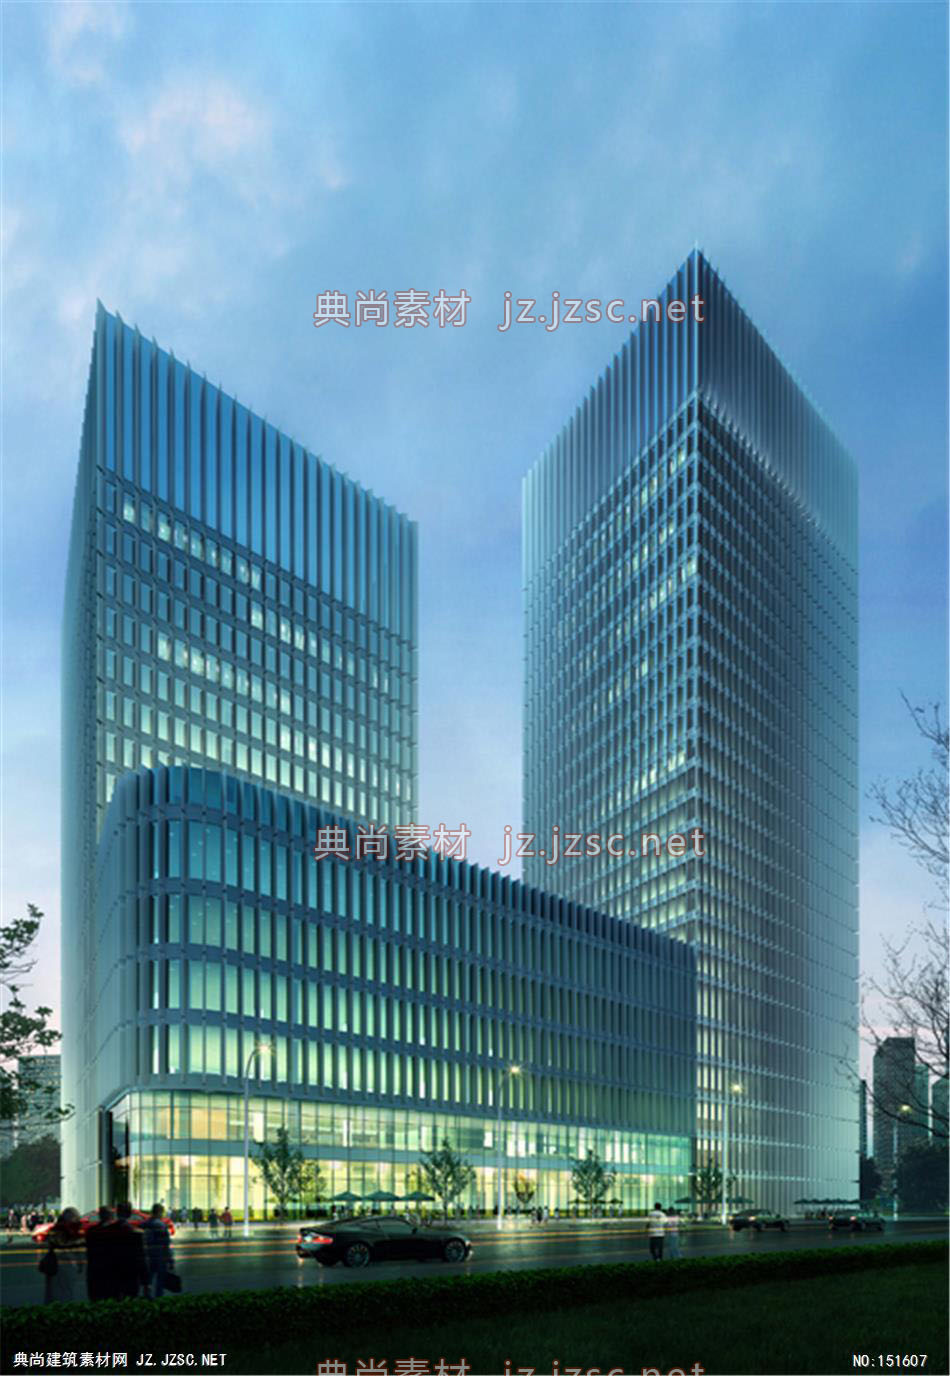 上海正达办公楼04高层办公效果图+交通及医疗建筑效果图